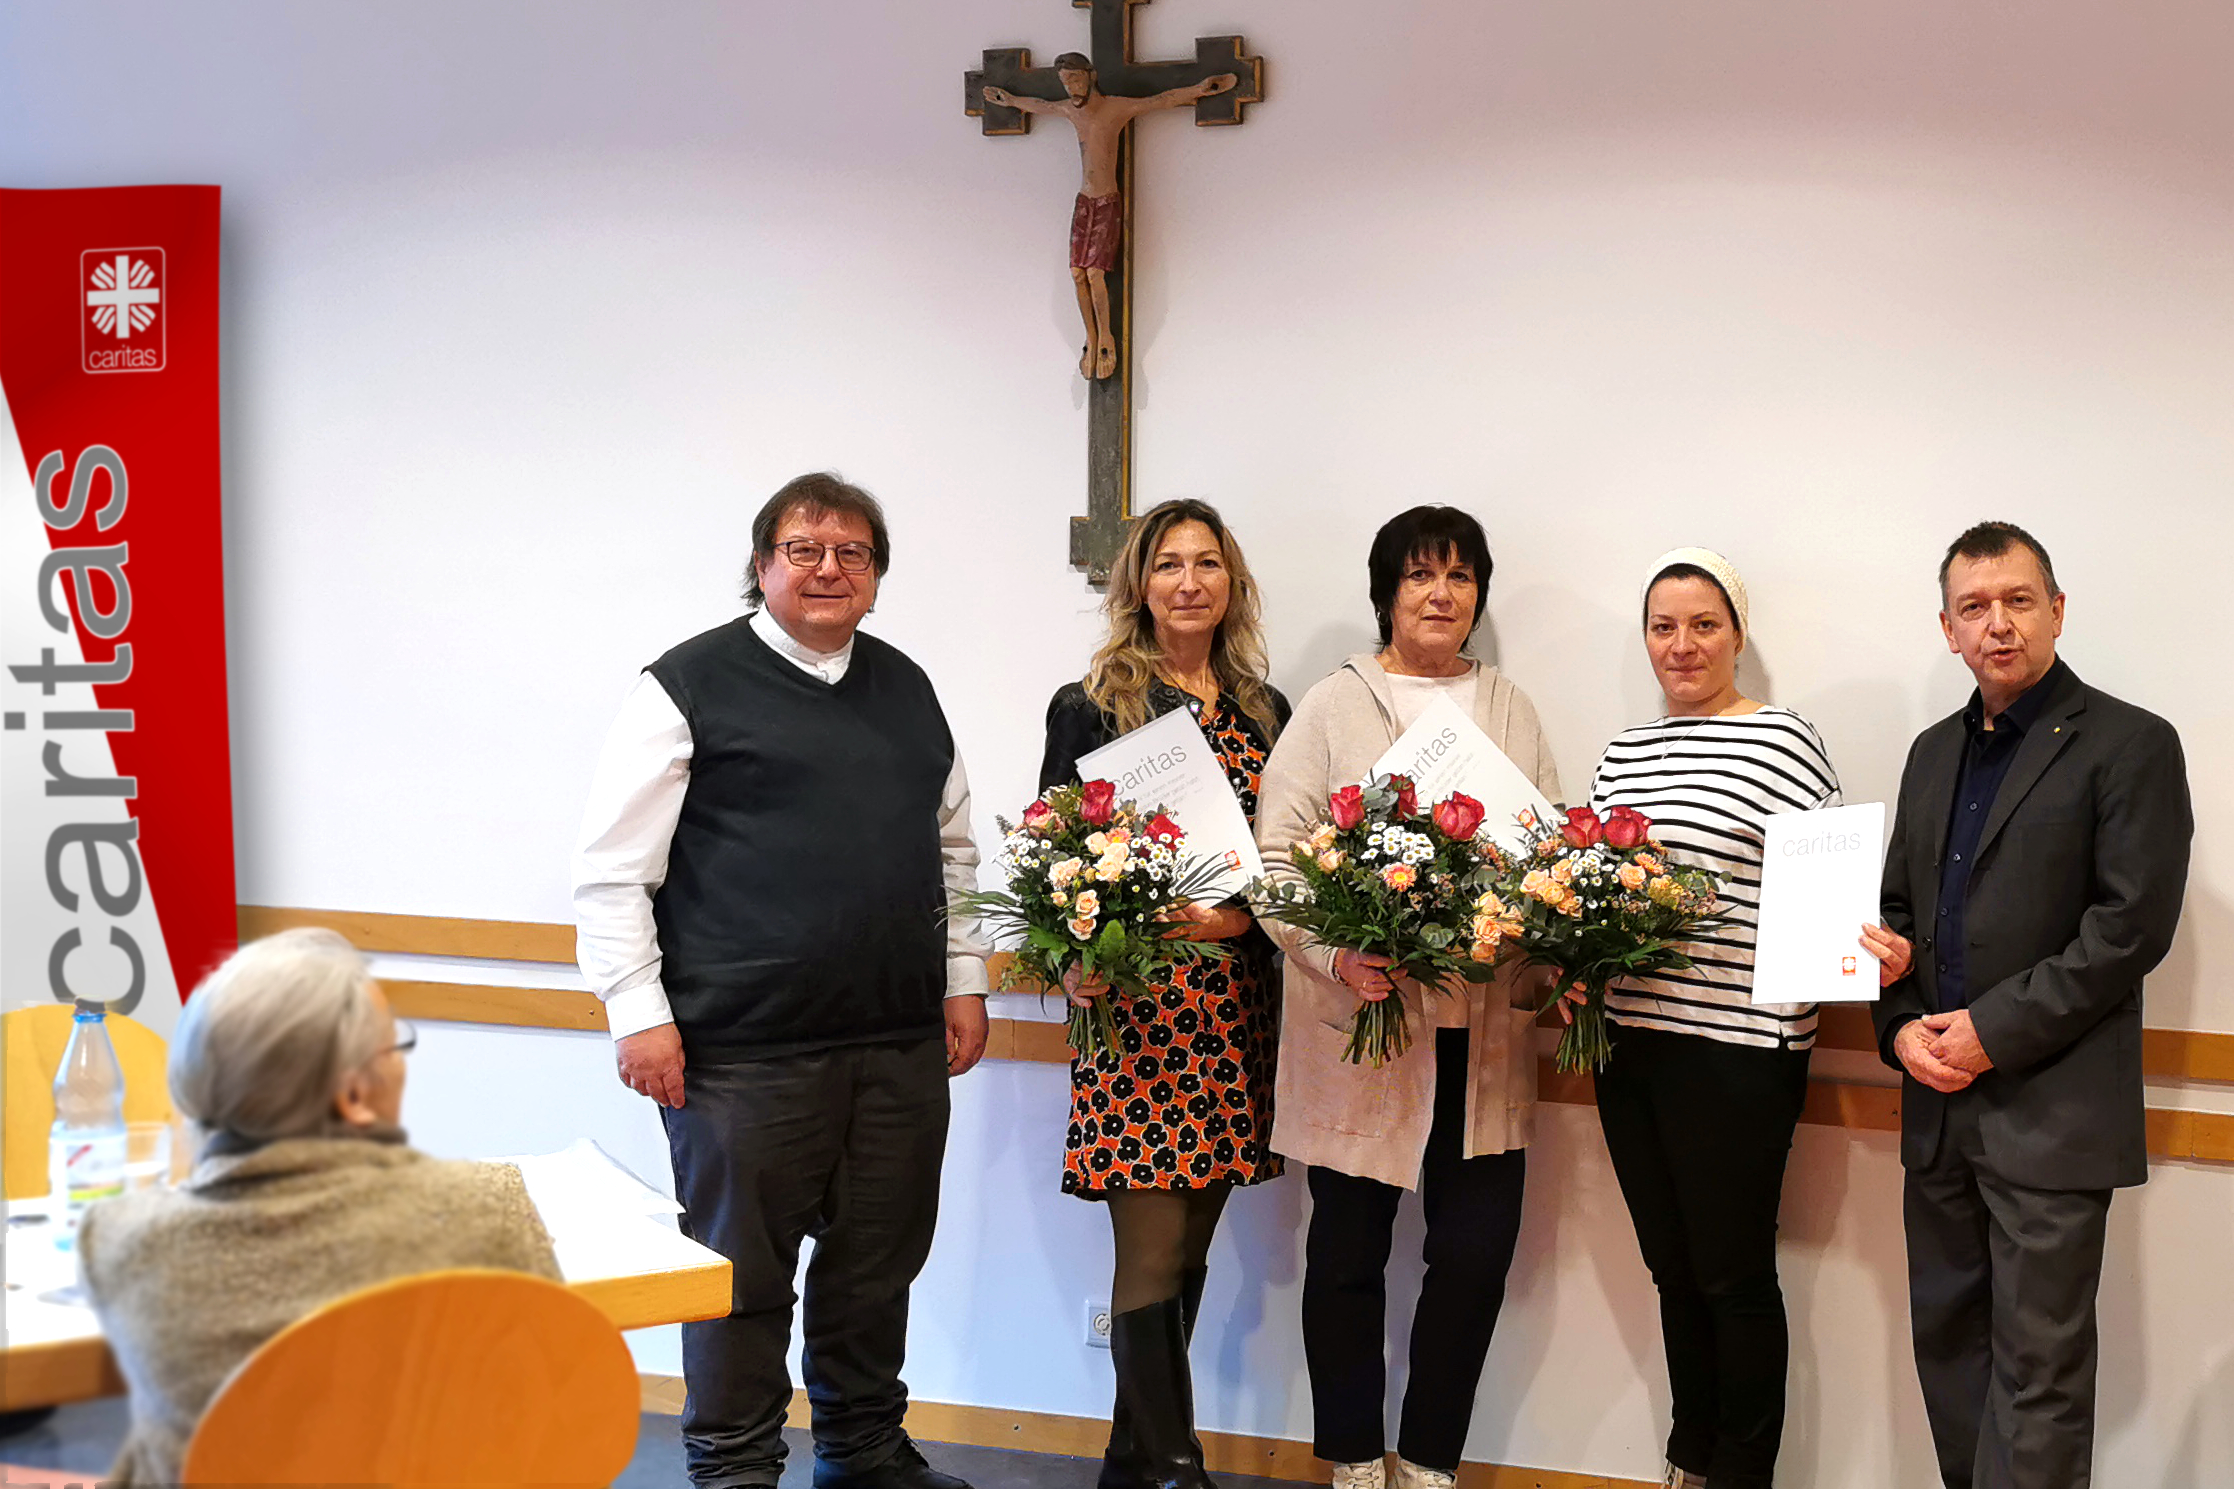 Der Caritasverband dankt drei Mitarbeiterinnen